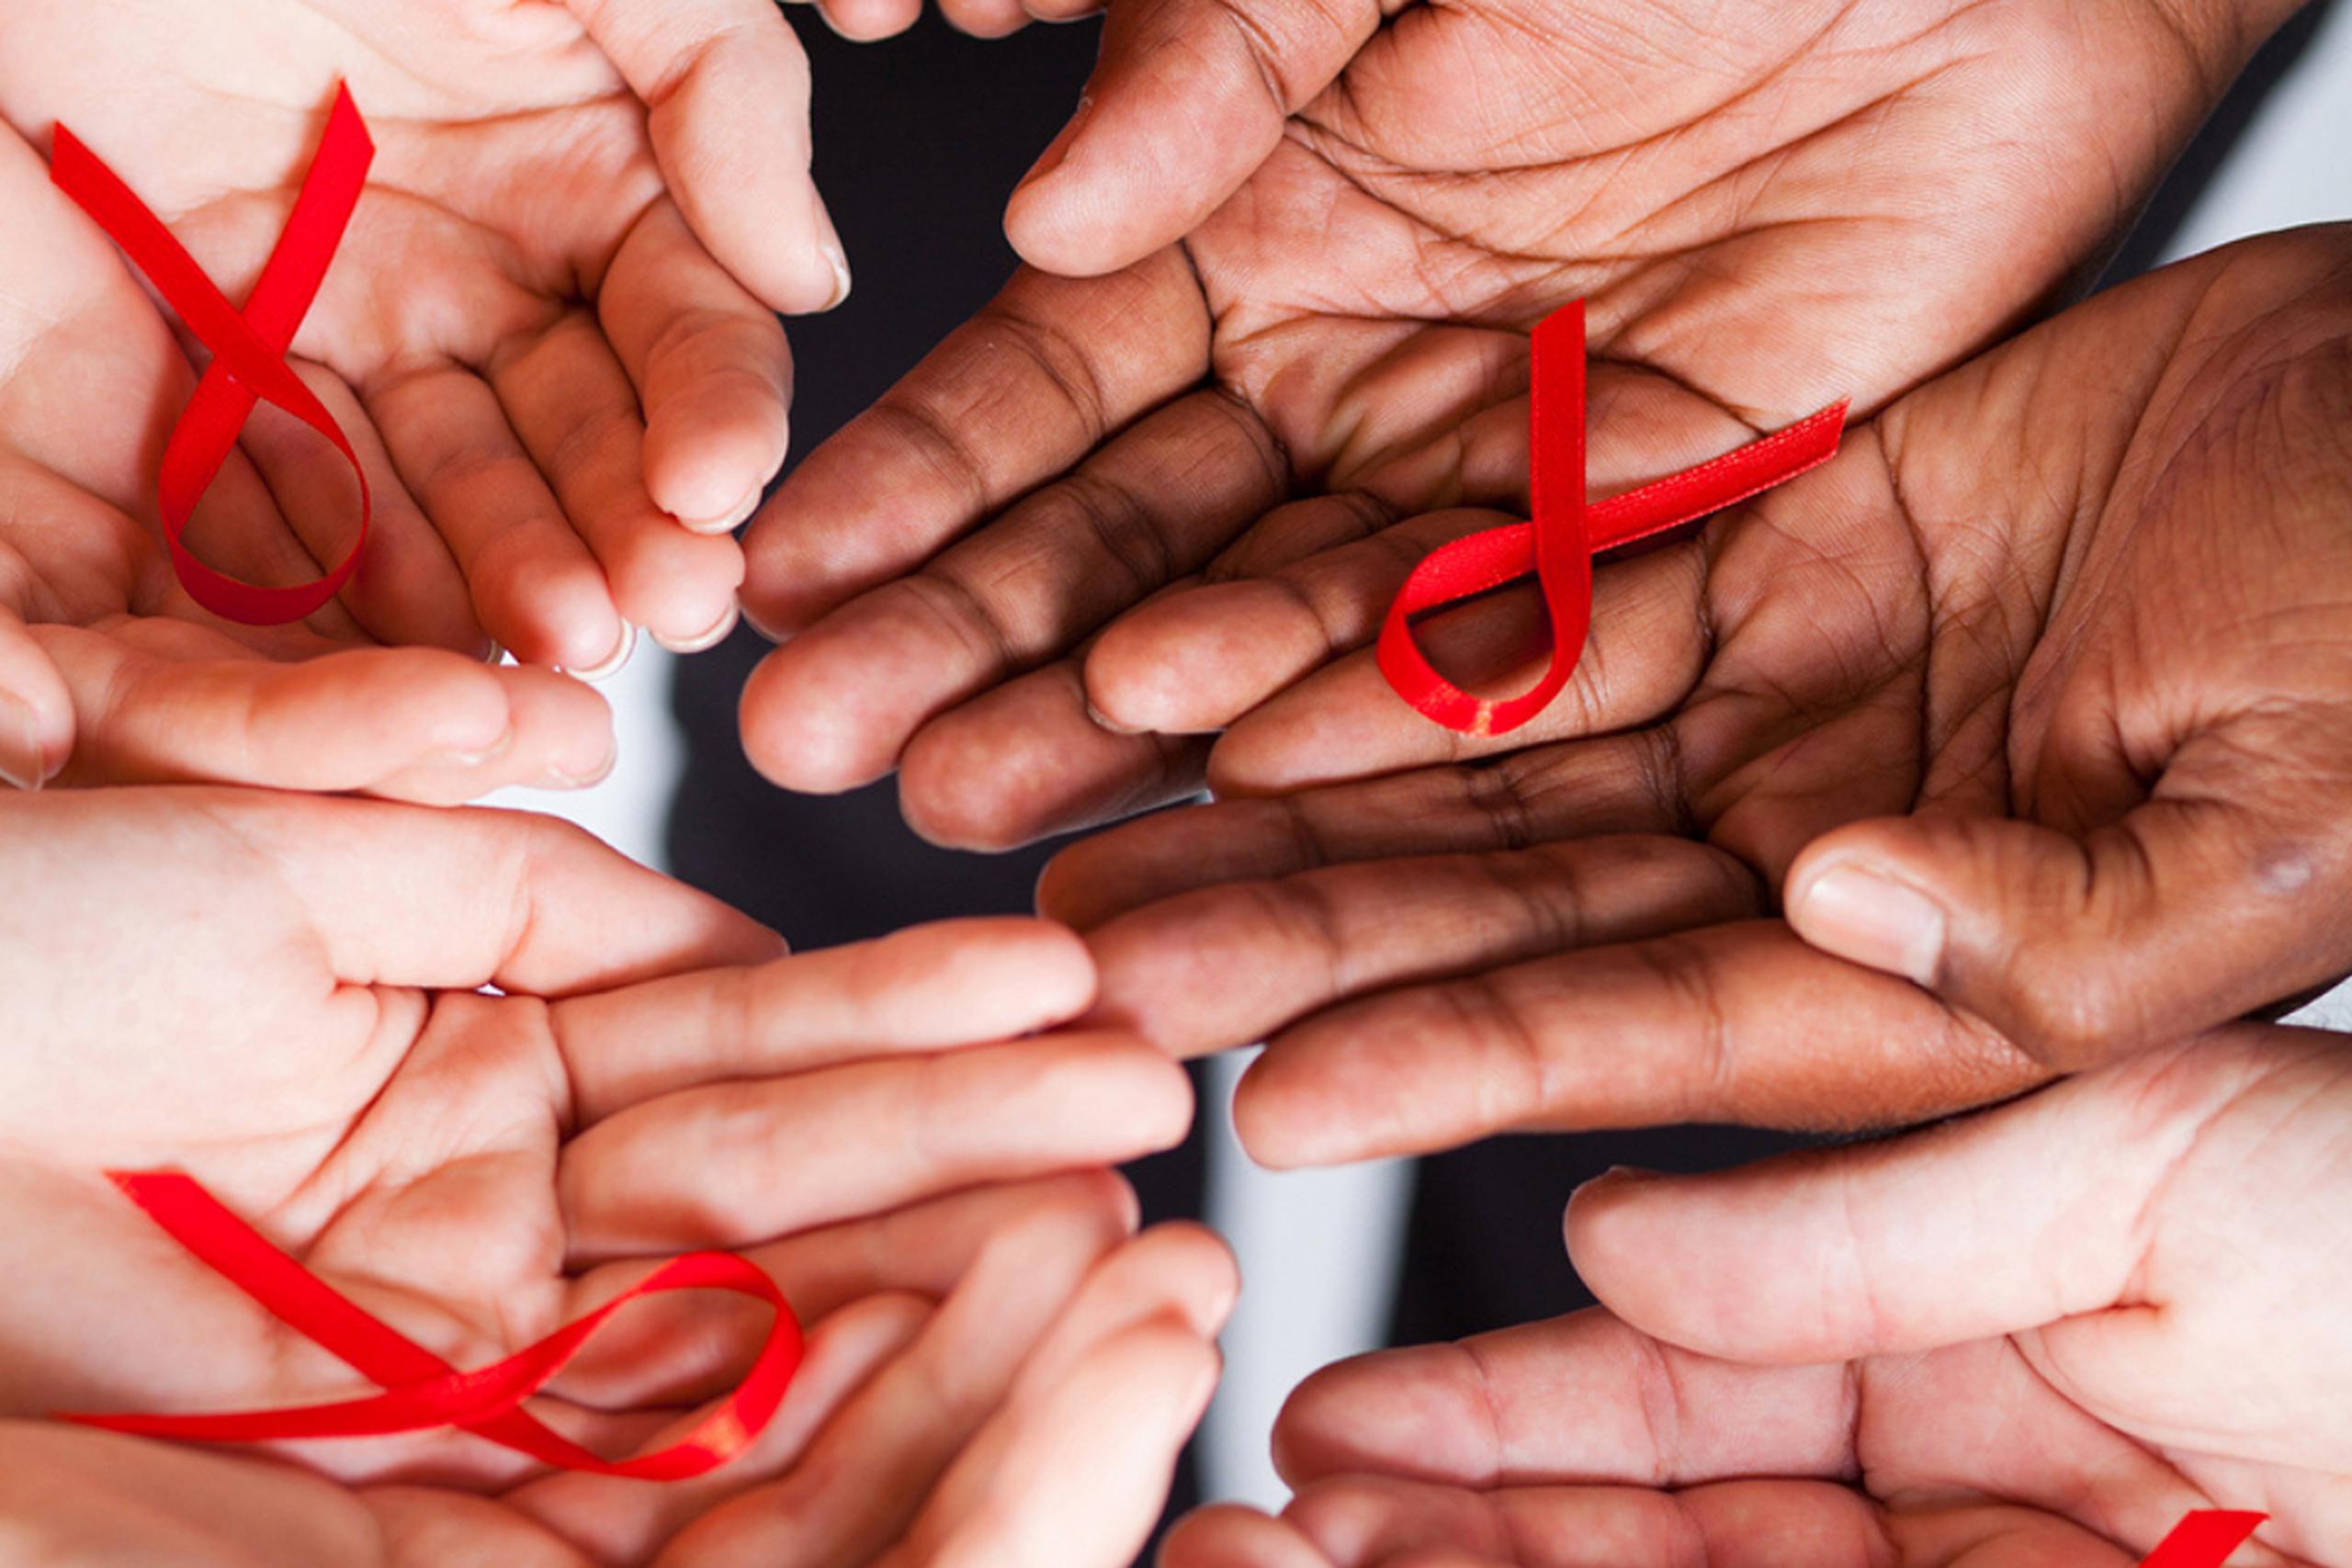 “El VIH es un virus singular y complejo que presenta desafíos sin precedentes para la creación de vacunas debido a su habilidad para atacar, trastornar y evadir el sistema inmunitario humano, dijo el jefe científico de J&J, doctor Paul Stoffel, en un comunicado.